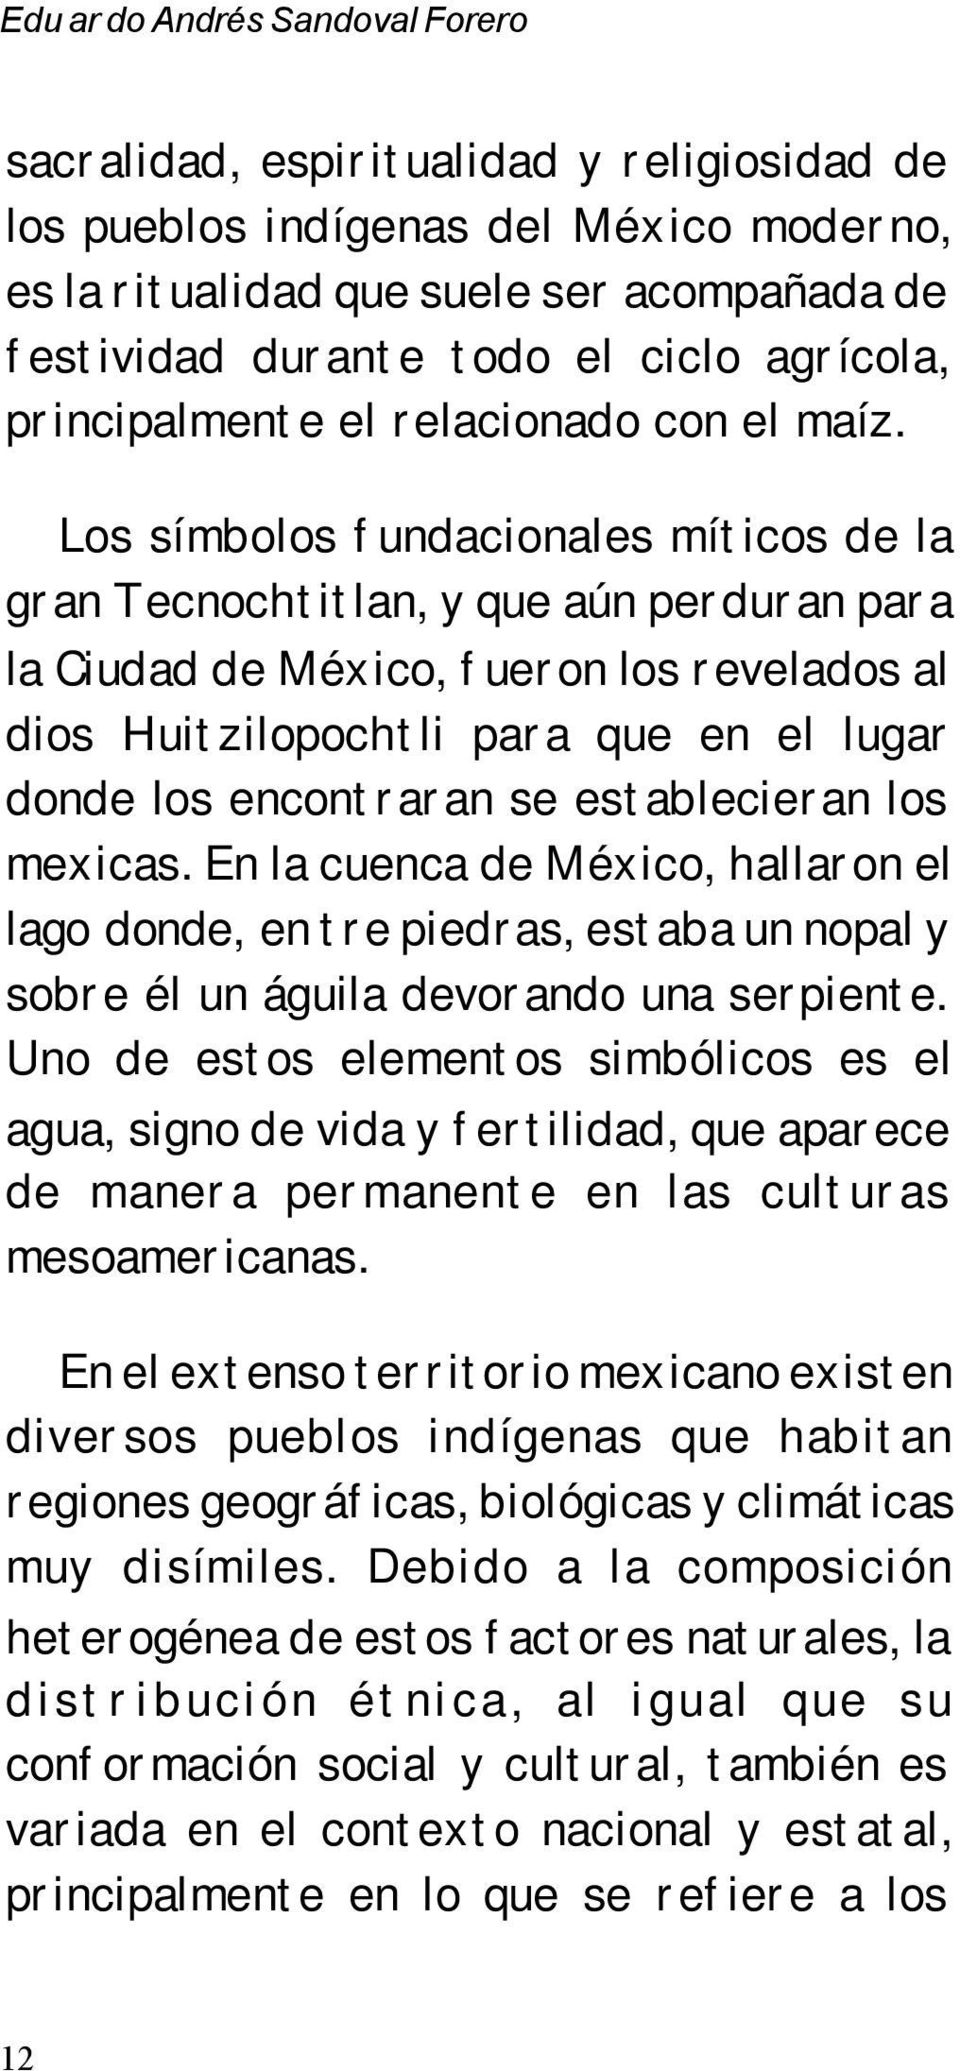 Los símbolos fundacionales míticos de la gran Tecnochtitlan, y que aún perduran para la Ciudad de México, fueron los revelados al dios Huitzilopochtli para que en el lugar donde los encontraran se